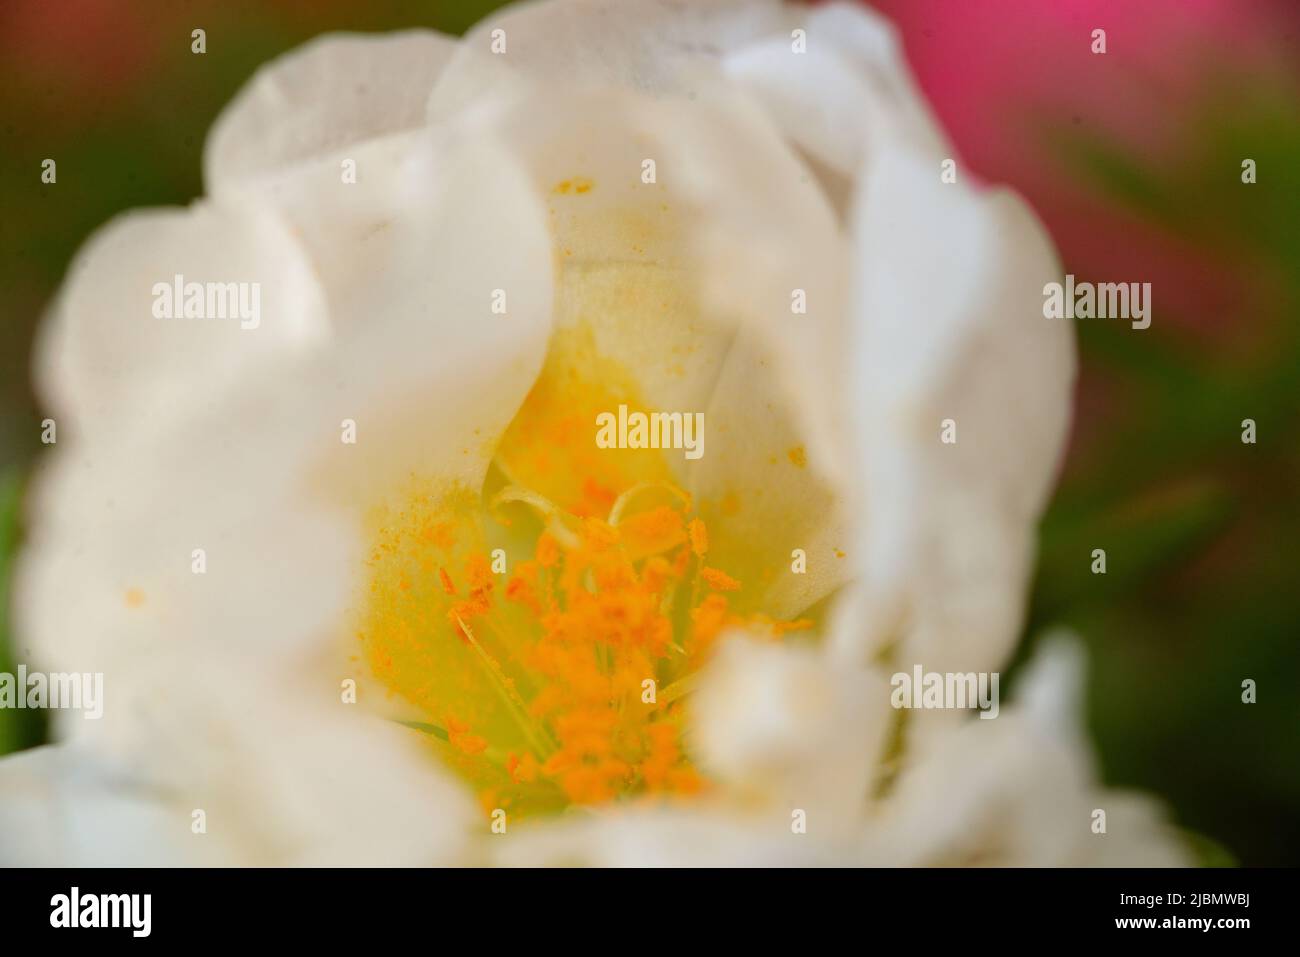 Image de gros plan de la rose de la mousse blanche (Portulaca) montrant le centre de la zostères constitué d'étamines avec du pollen. Banque D'Images